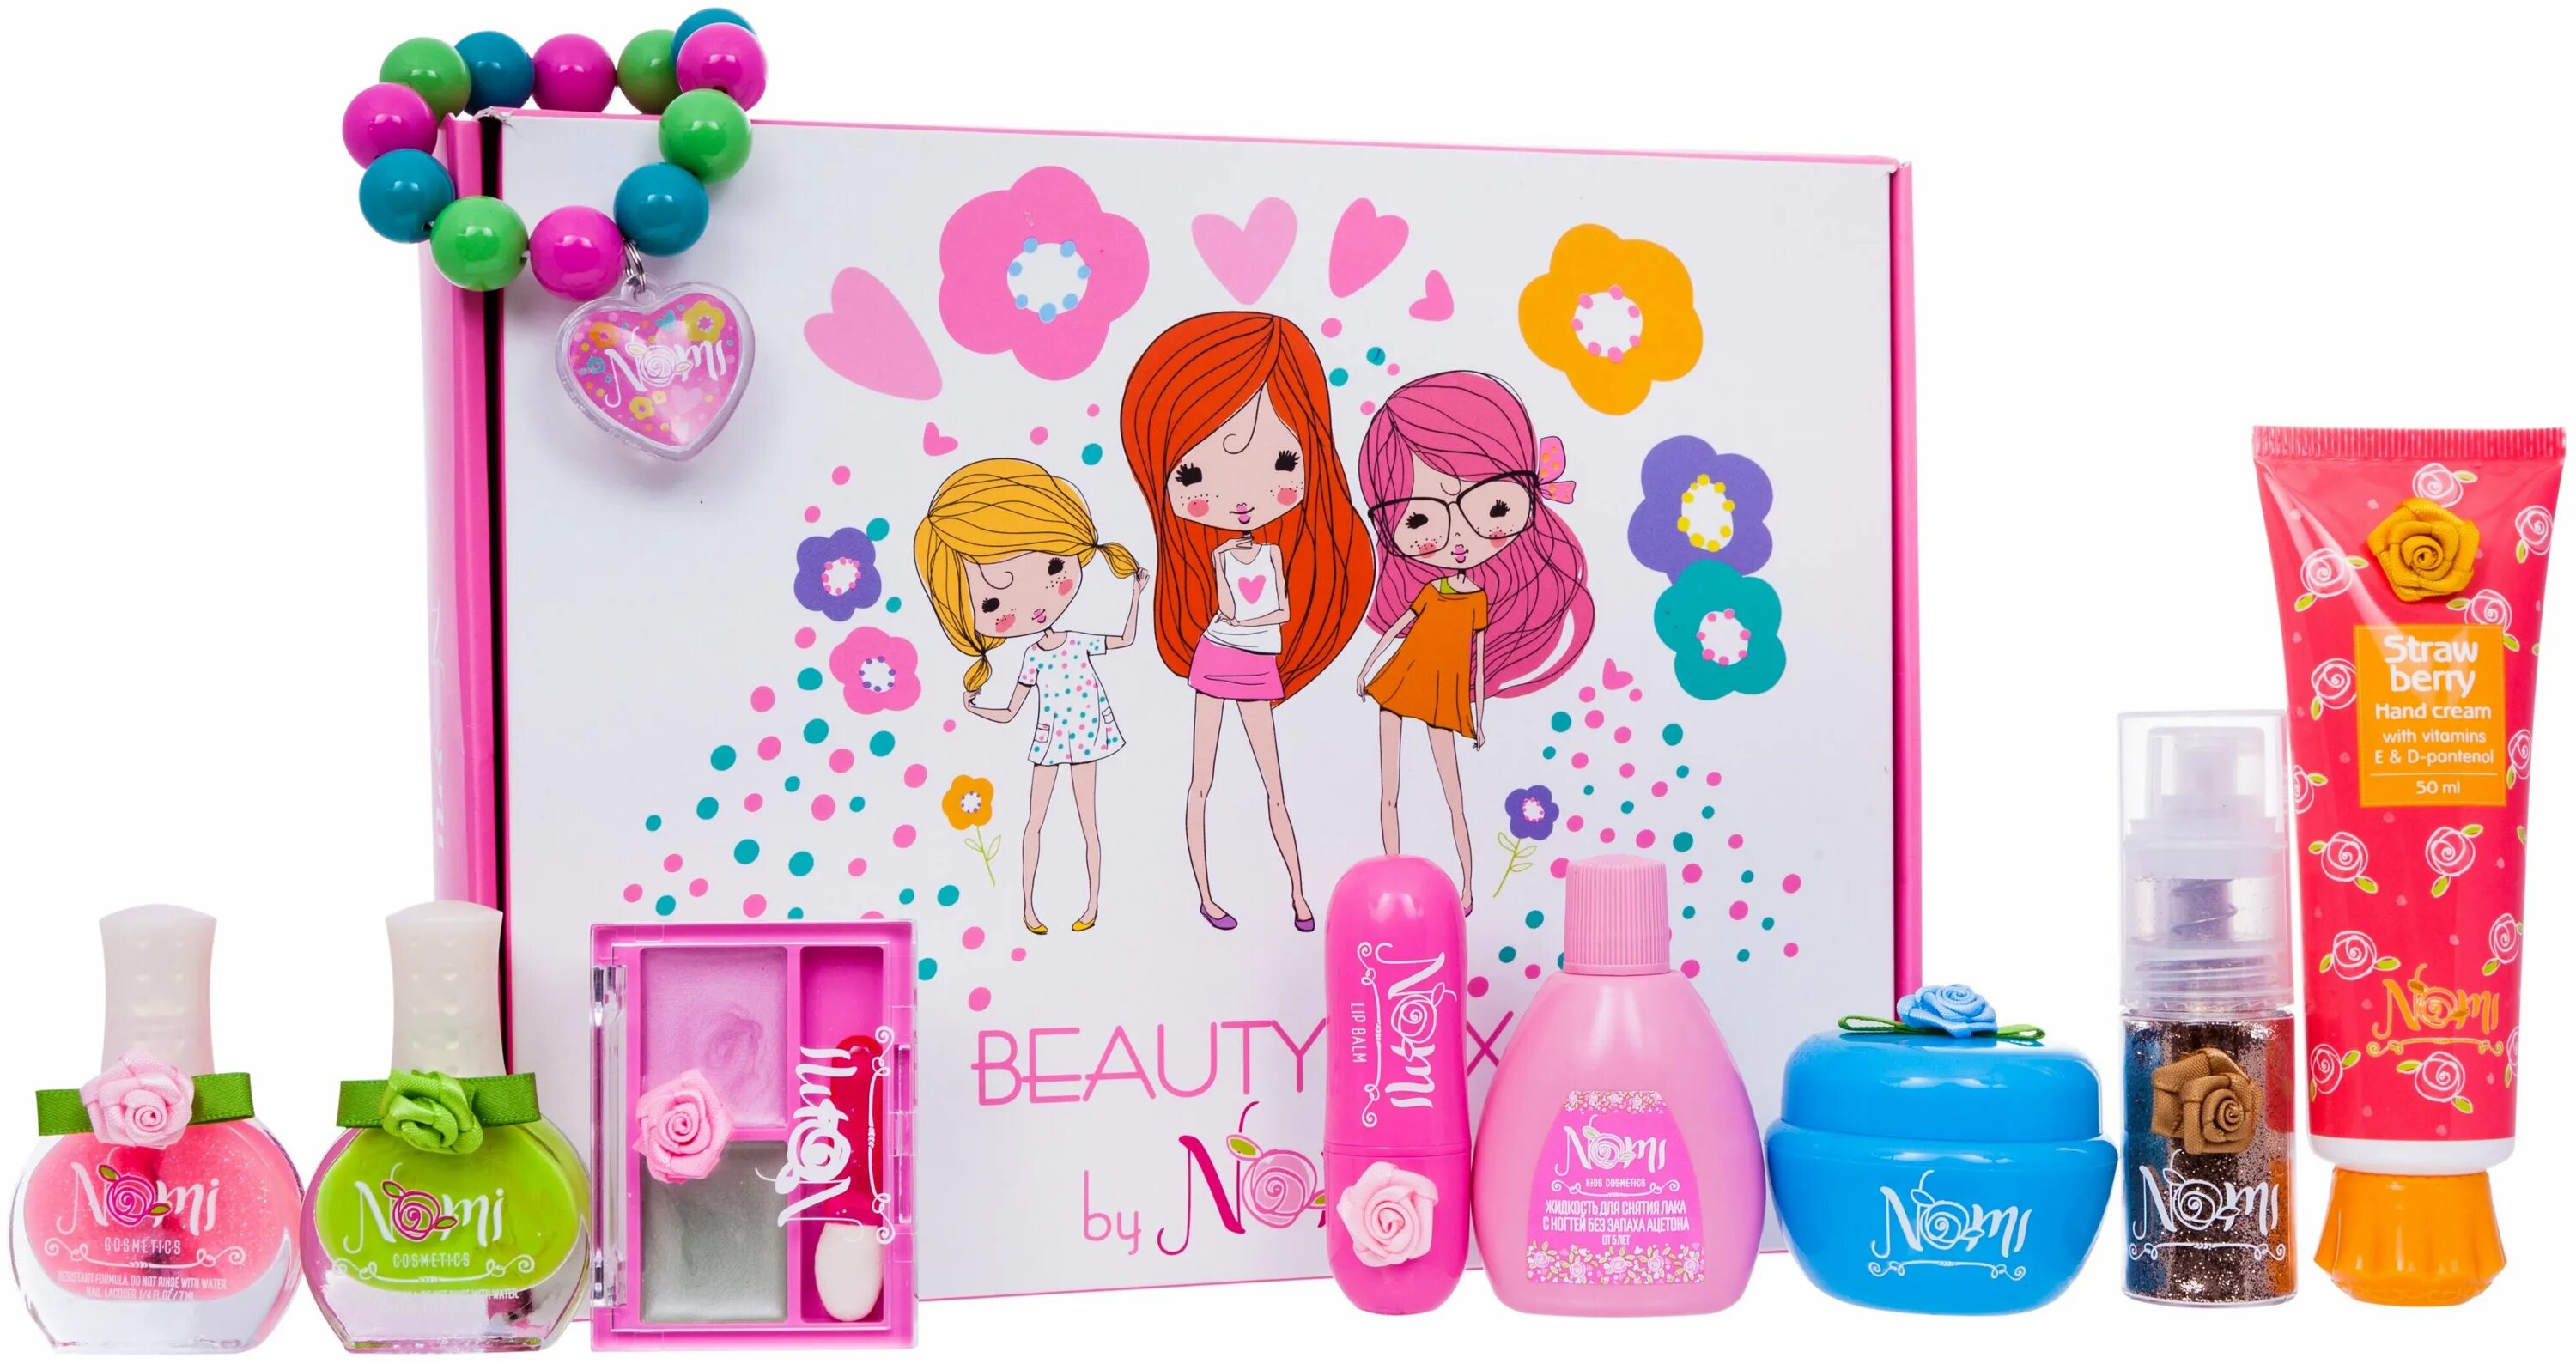 10 14 отзывы. Набор косметики Nomi Beauty Box №14. Косметики Nomi "Beauty Box №7". Nomi детская косметика. Набор косметики для детей 14 лет.